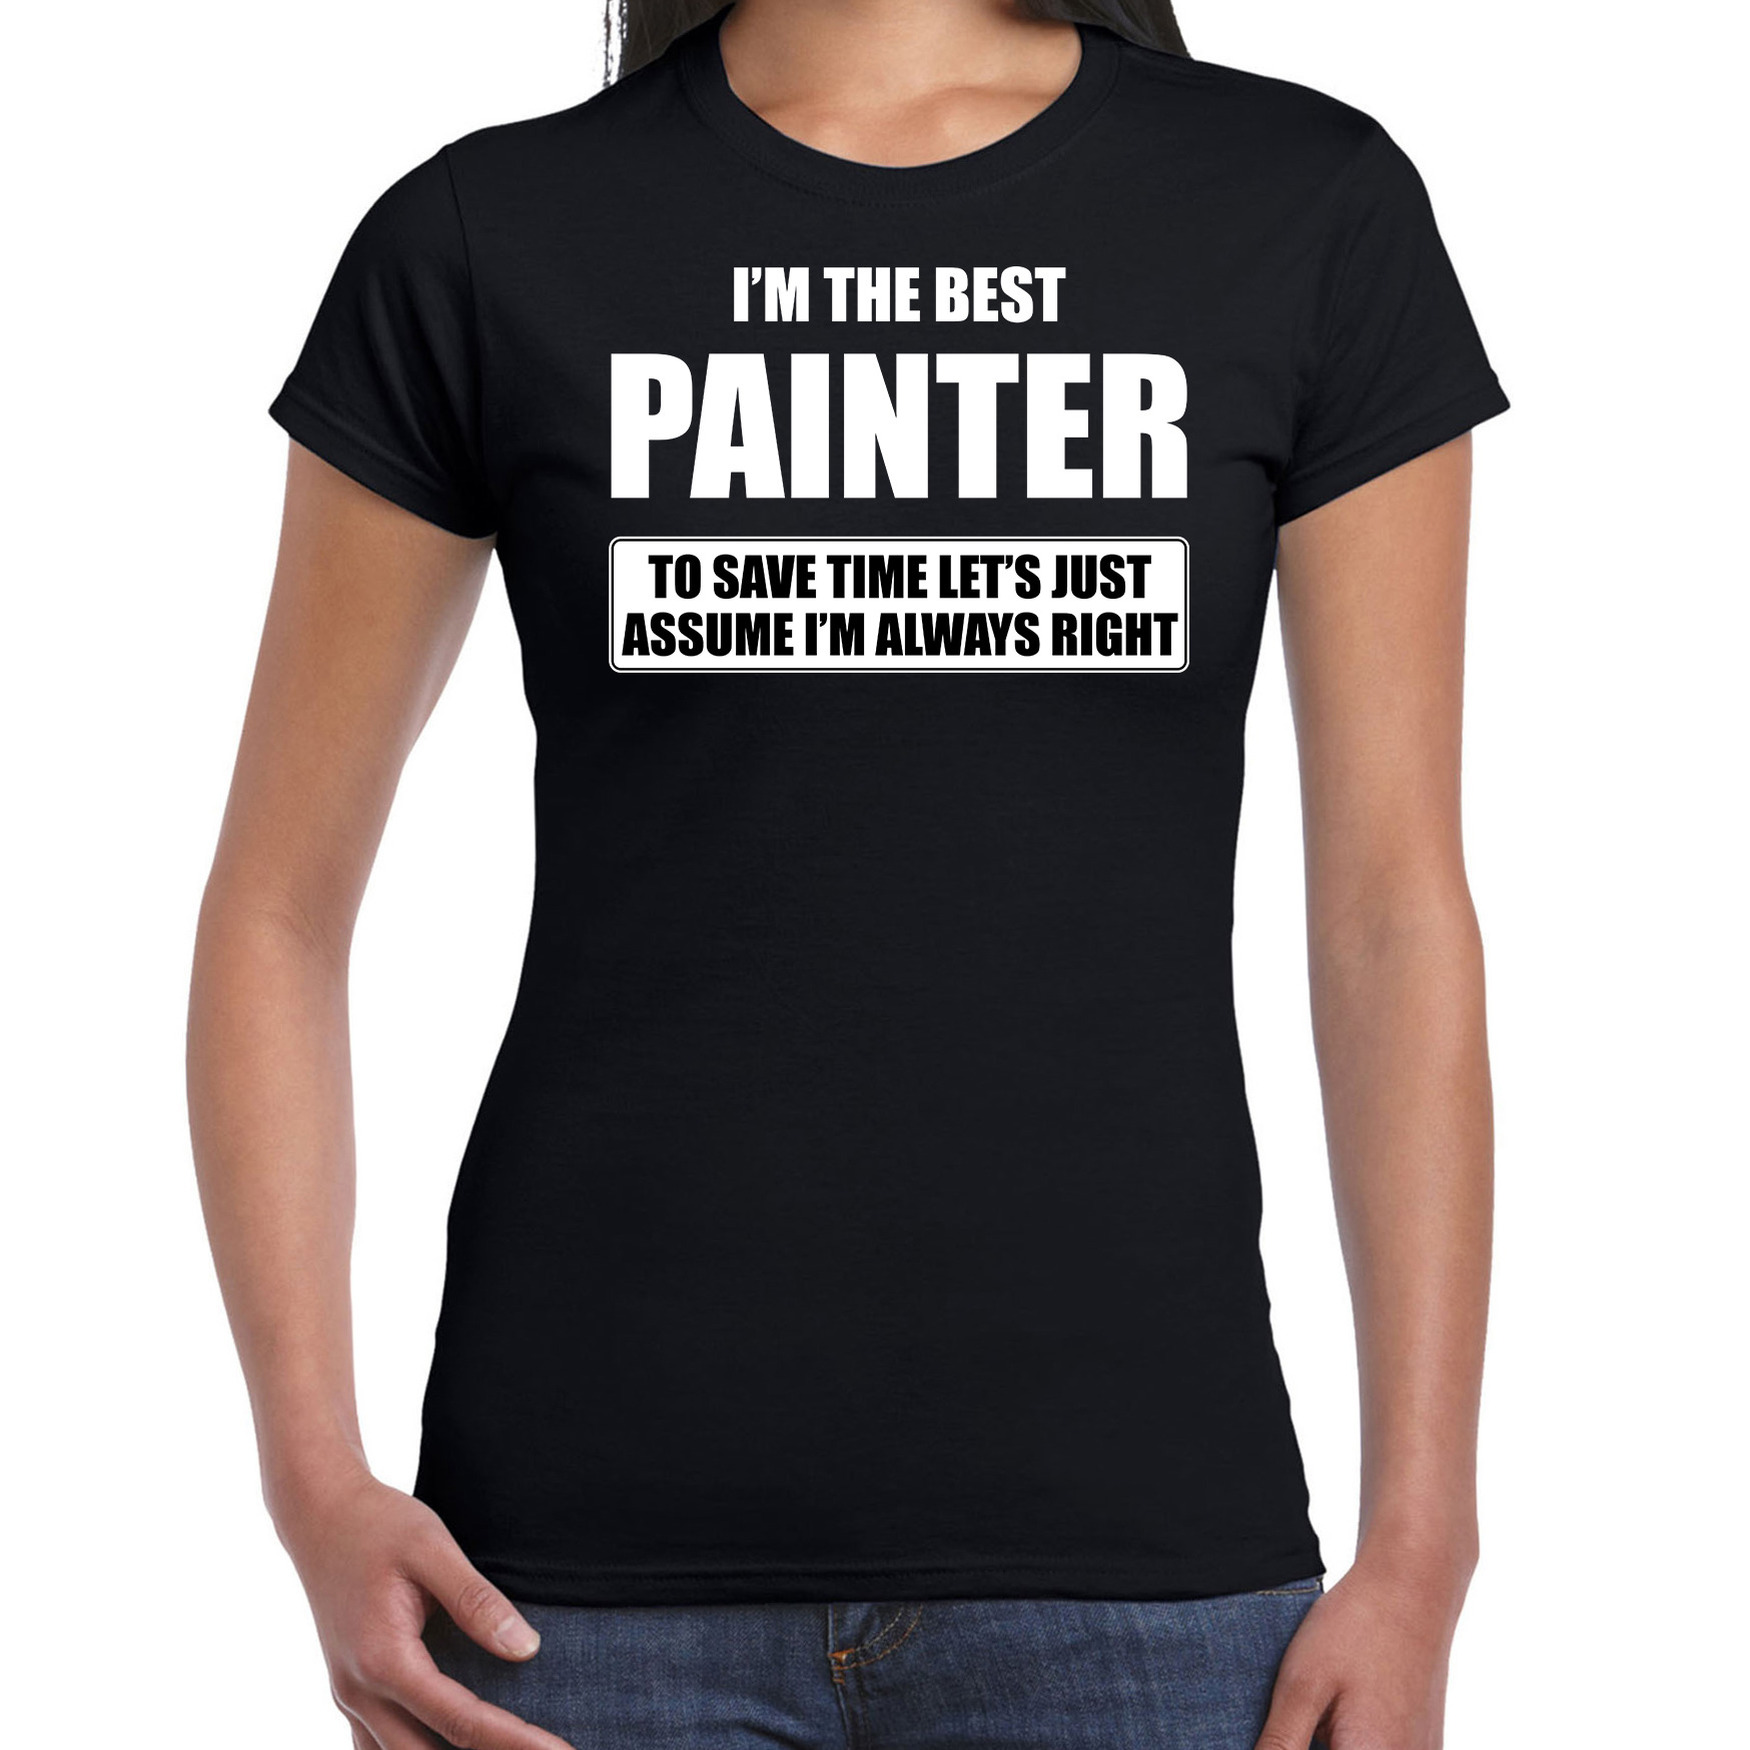 I'm the best painter t-shirt zwart dames De beste schilder cadeau